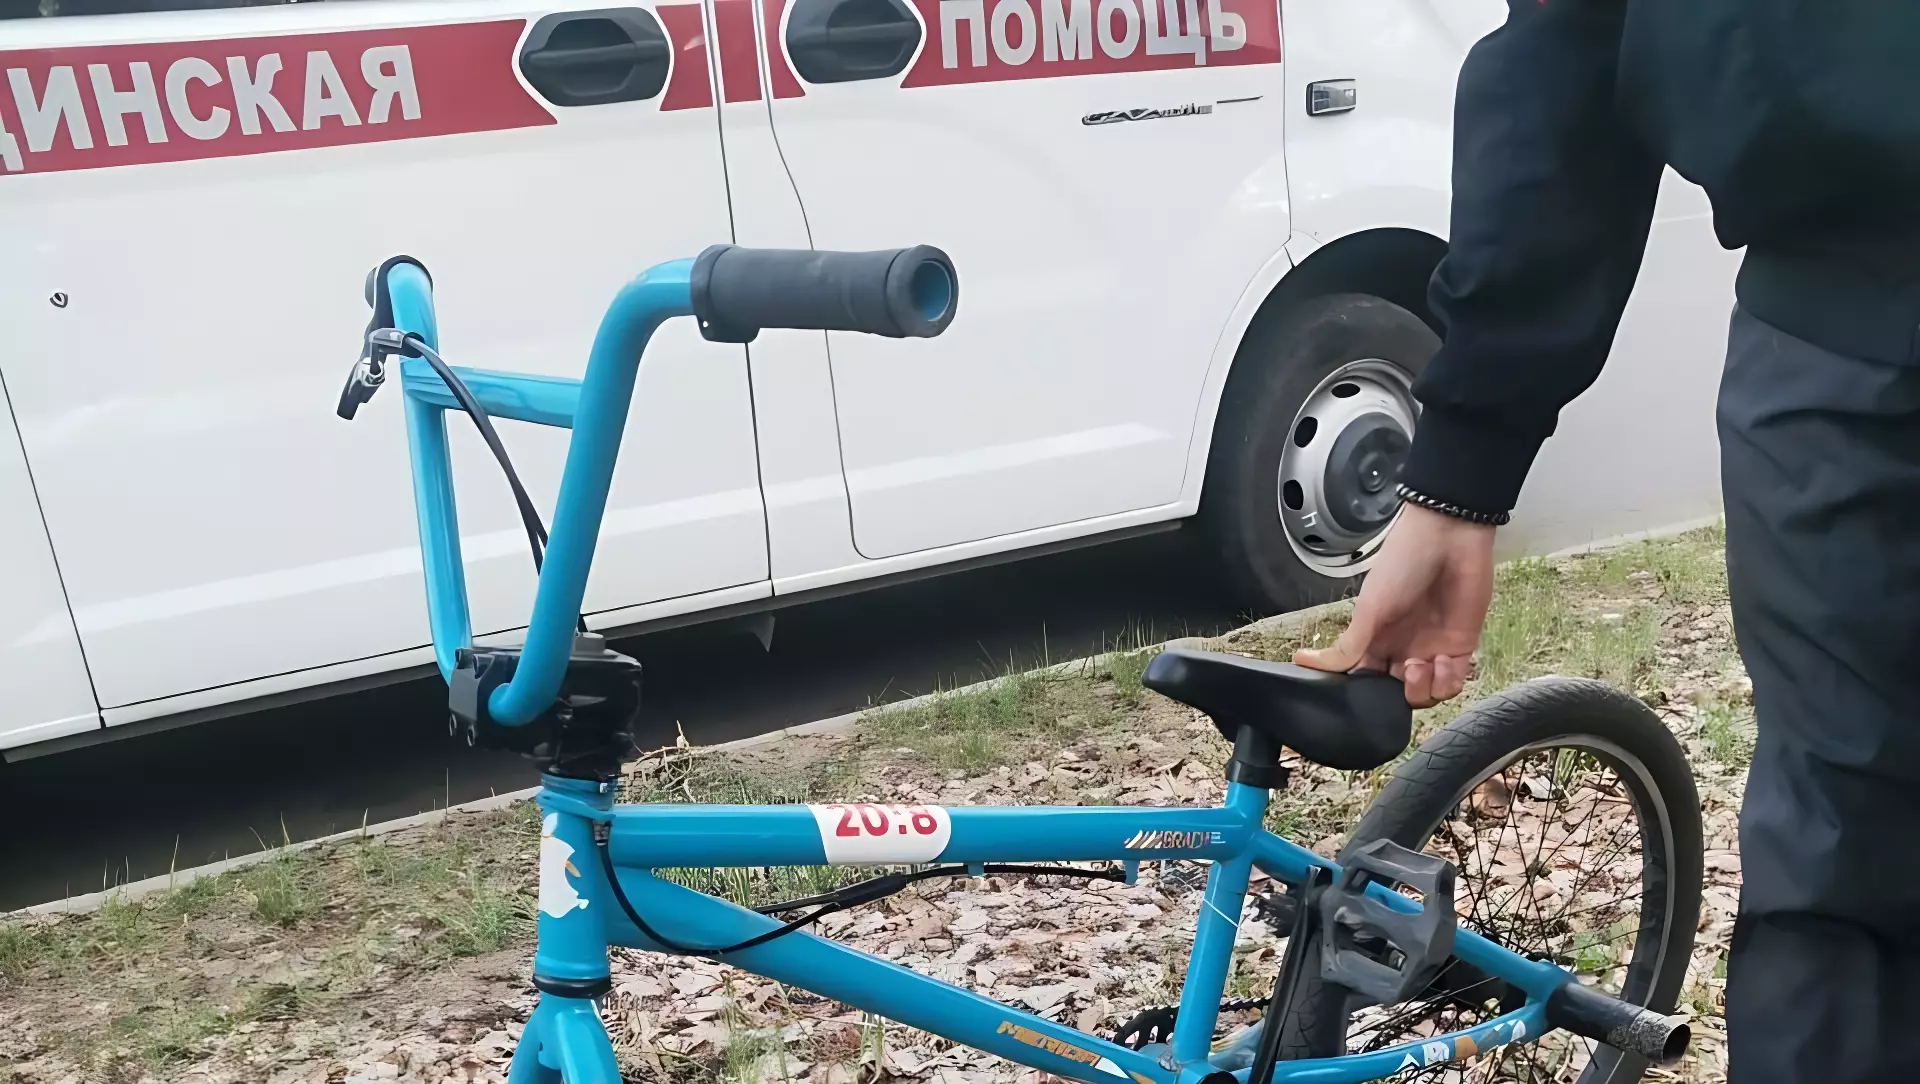 Ребёнка на велосипеде сбил автобус в Комсомольске-на-Амуре (ВИДЕО)